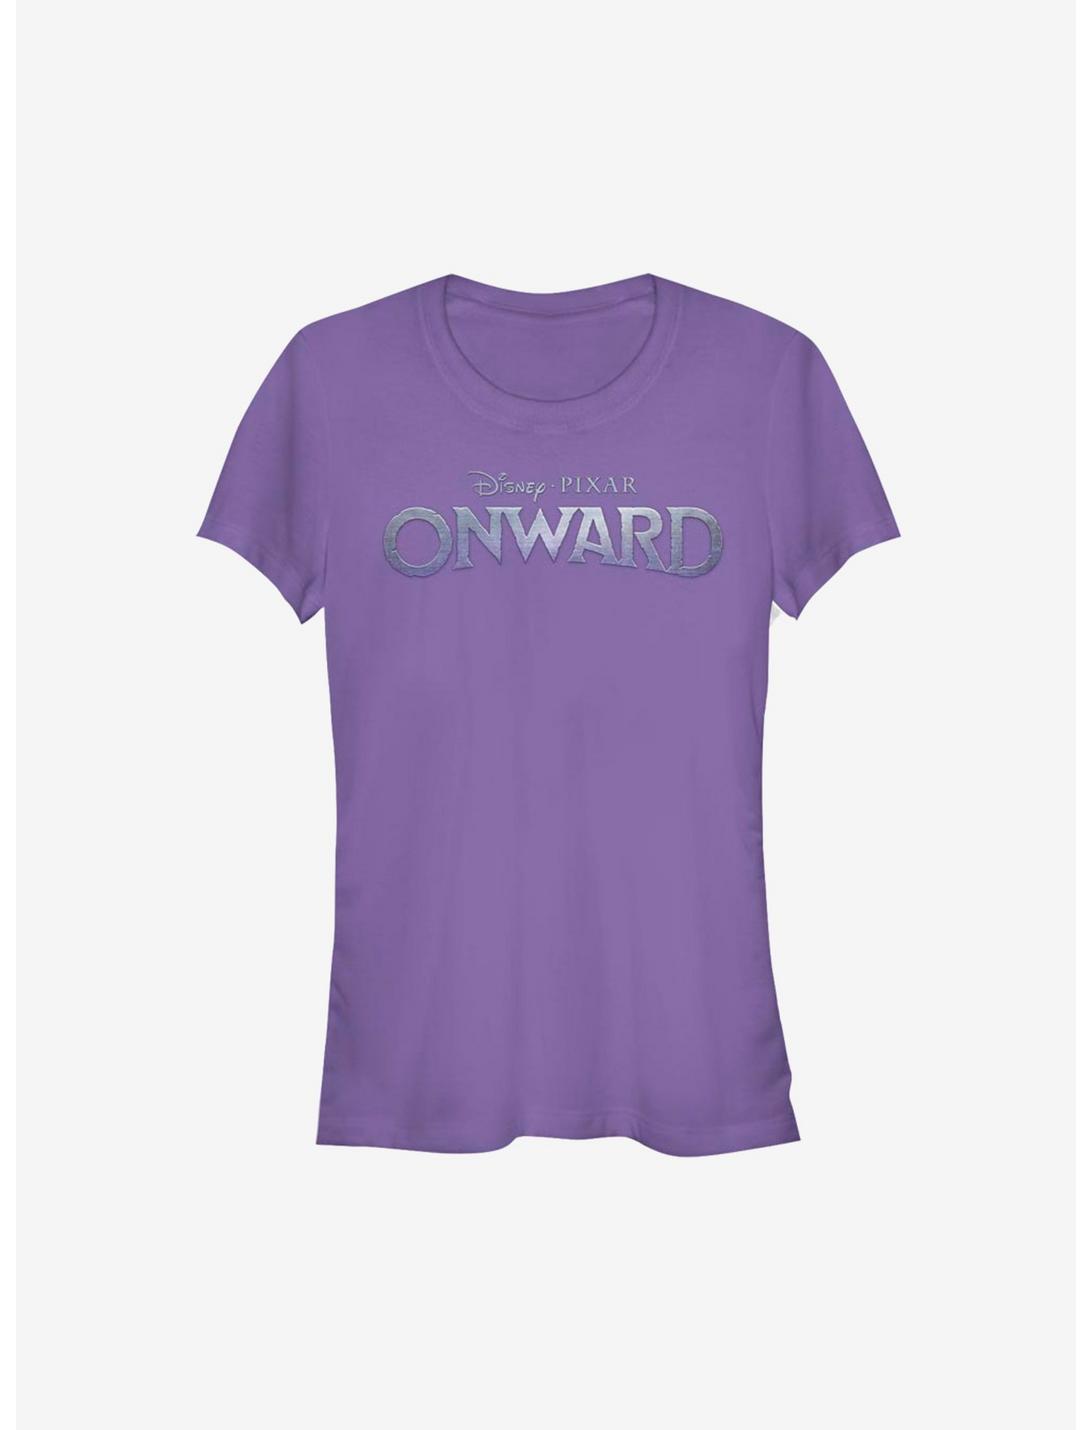 Disney Pixar Onward Logo Girls T-Shirt, PURPLE, hi-res